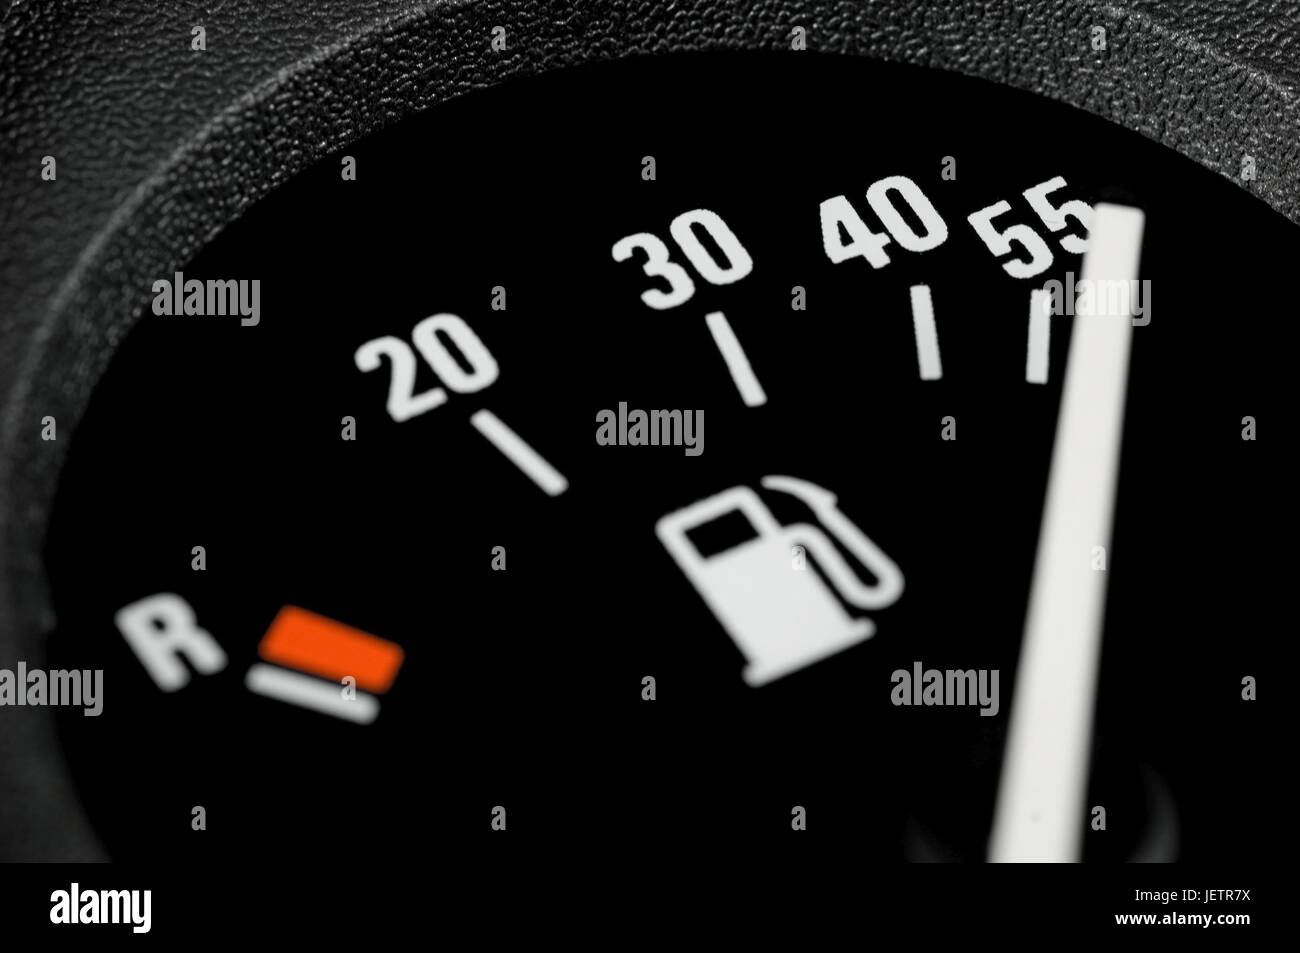 Kraftstoff-Ankündigung in einem Auto auf Position getankt. Liter-Daten, Reserve-Marke sowie dem Piktogramm eine Zapfsäule sind erkennbar, Kraftstoffanzei Stockfoto